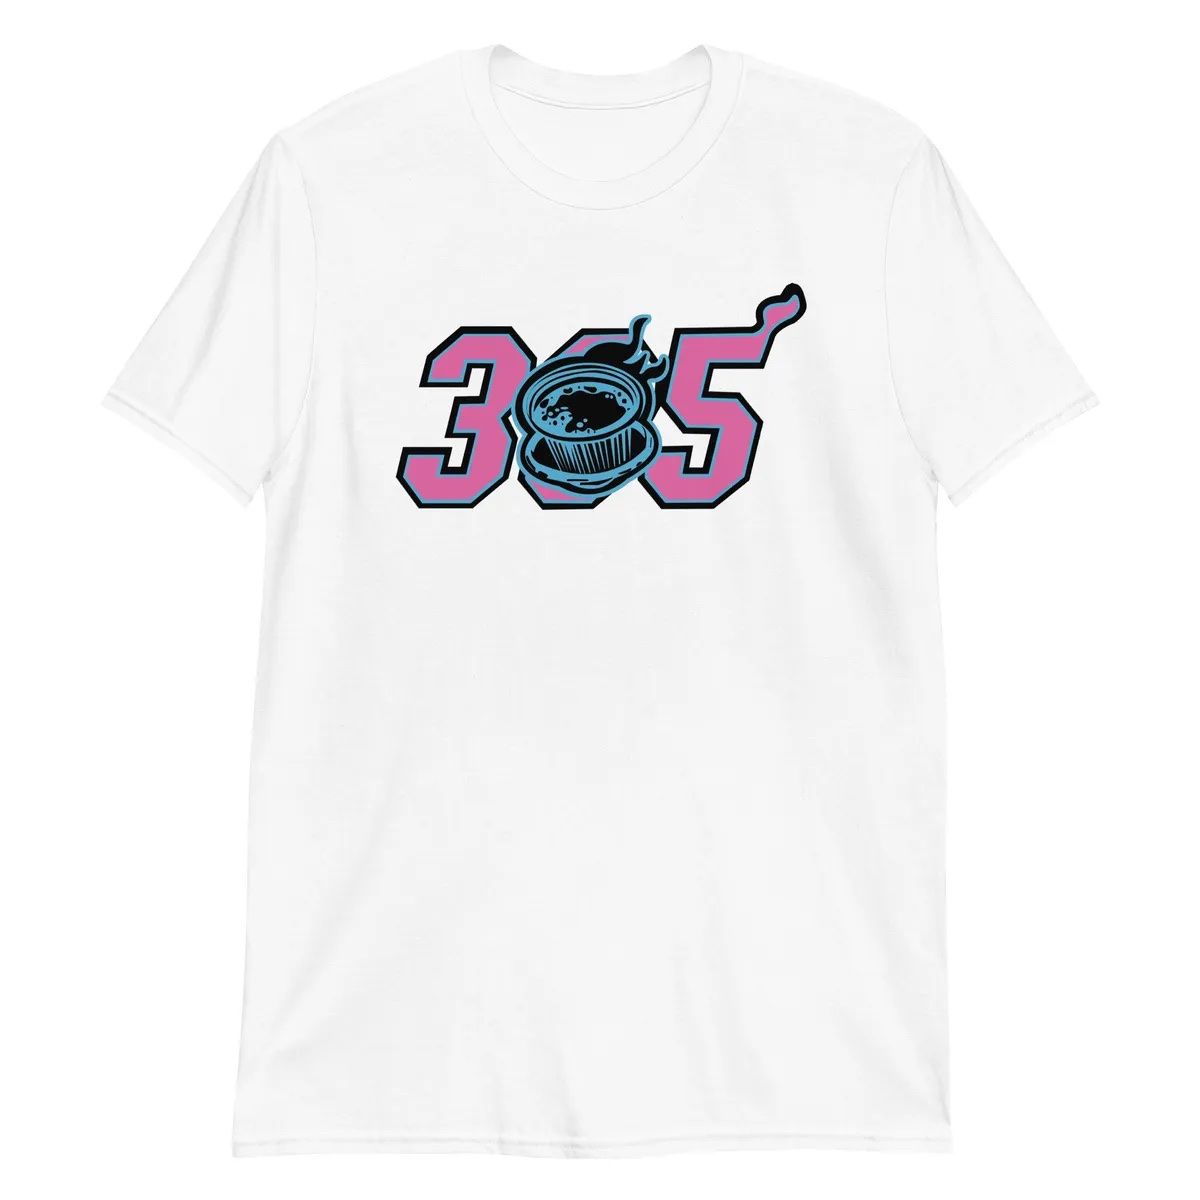 305 Cafecito Miami Heat Miami Vice T-Shirt Black